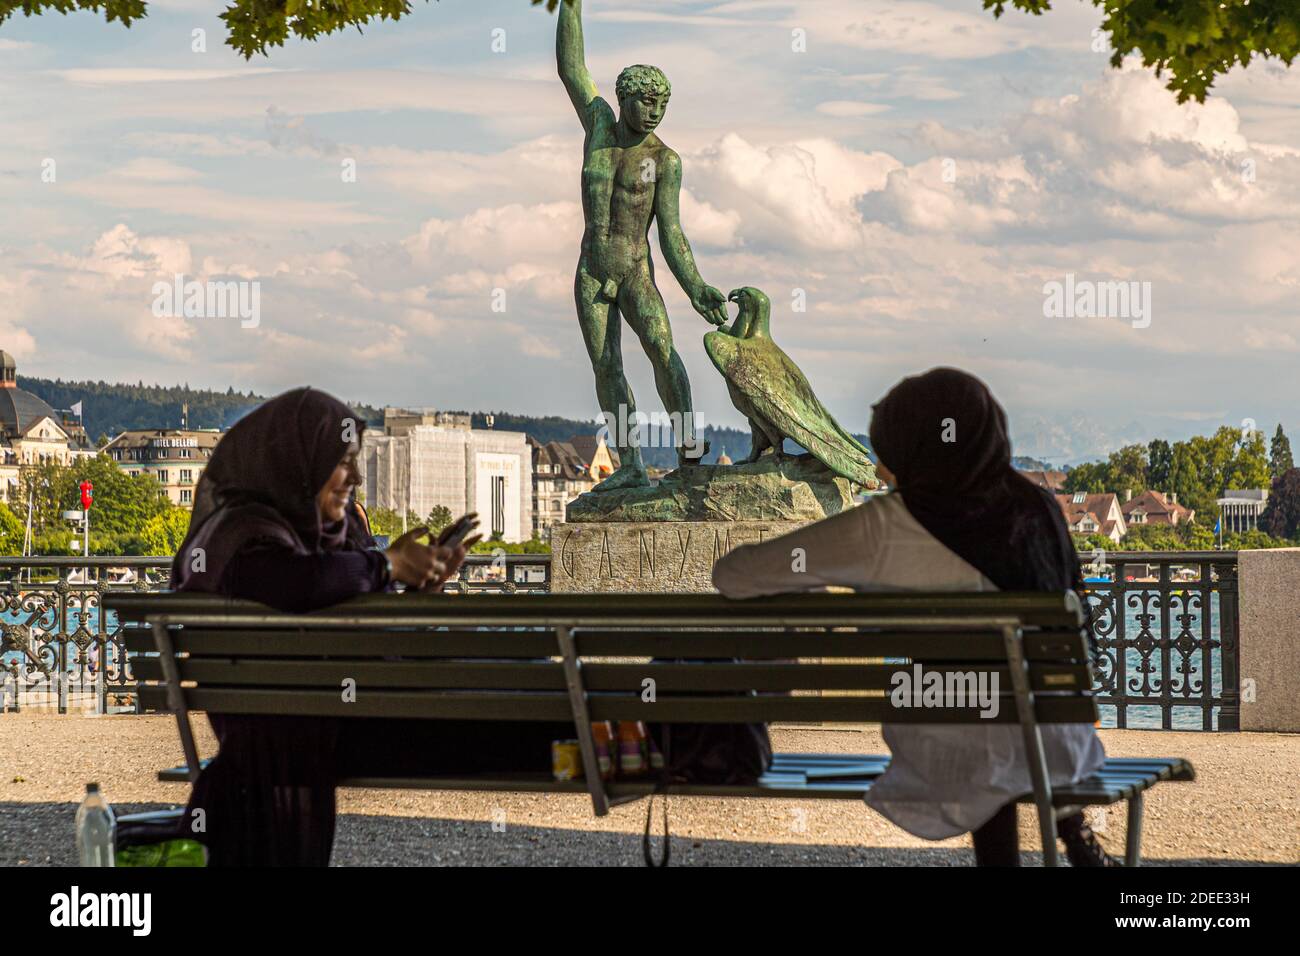 Headscarves relax in front of the Ganymede sculpture on the Bürkliterrasse in Zurich, Switzerland Stock Photo